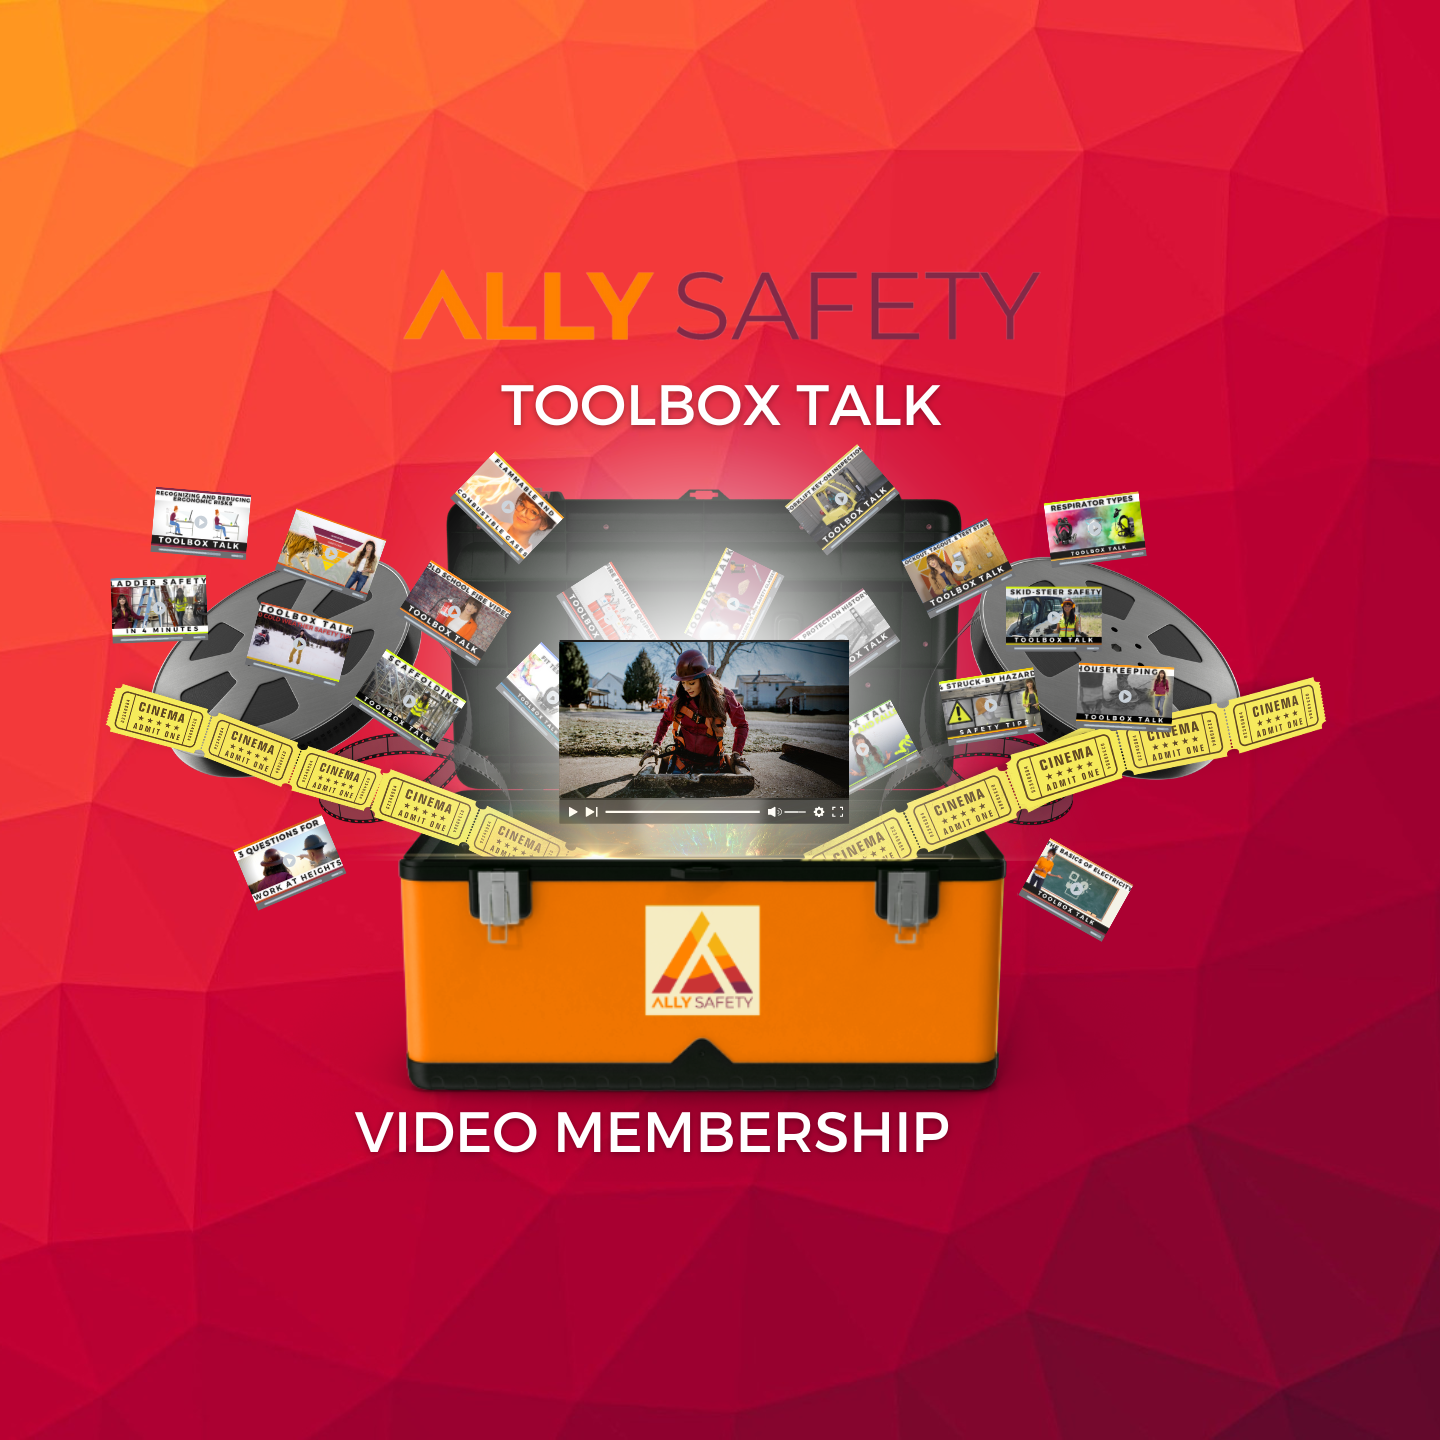 Toolbox Talk Video Membership